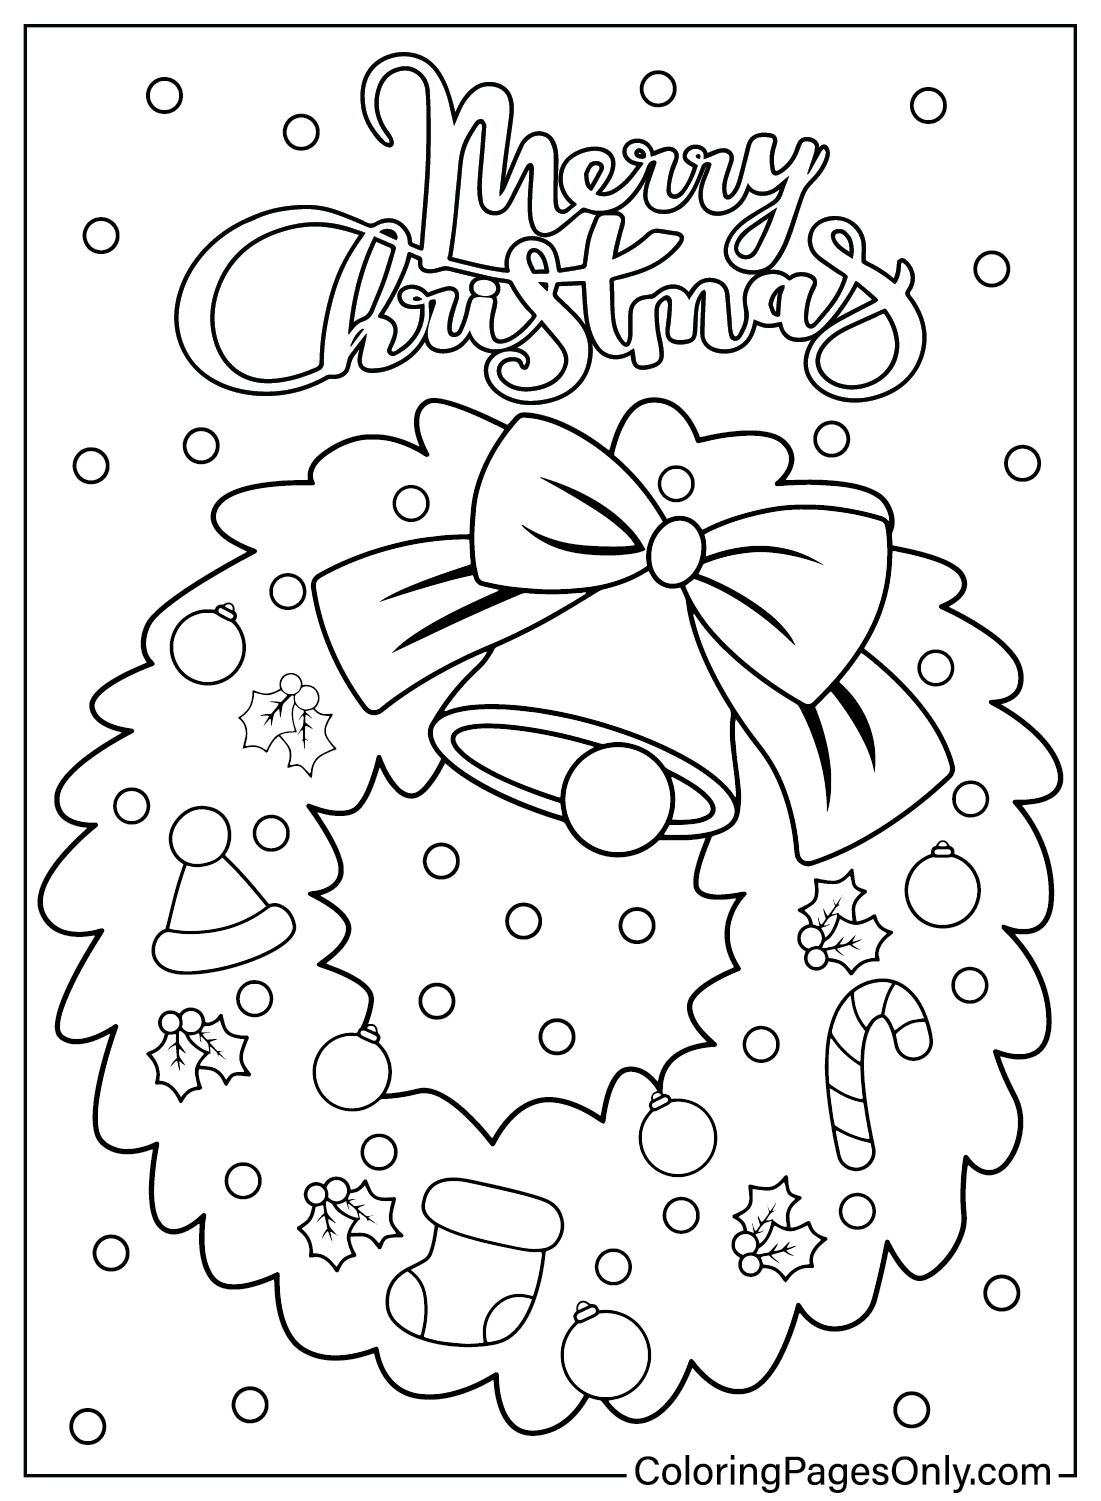 Página para colorear de corona de Navidad imprimible de Corona de Navidad